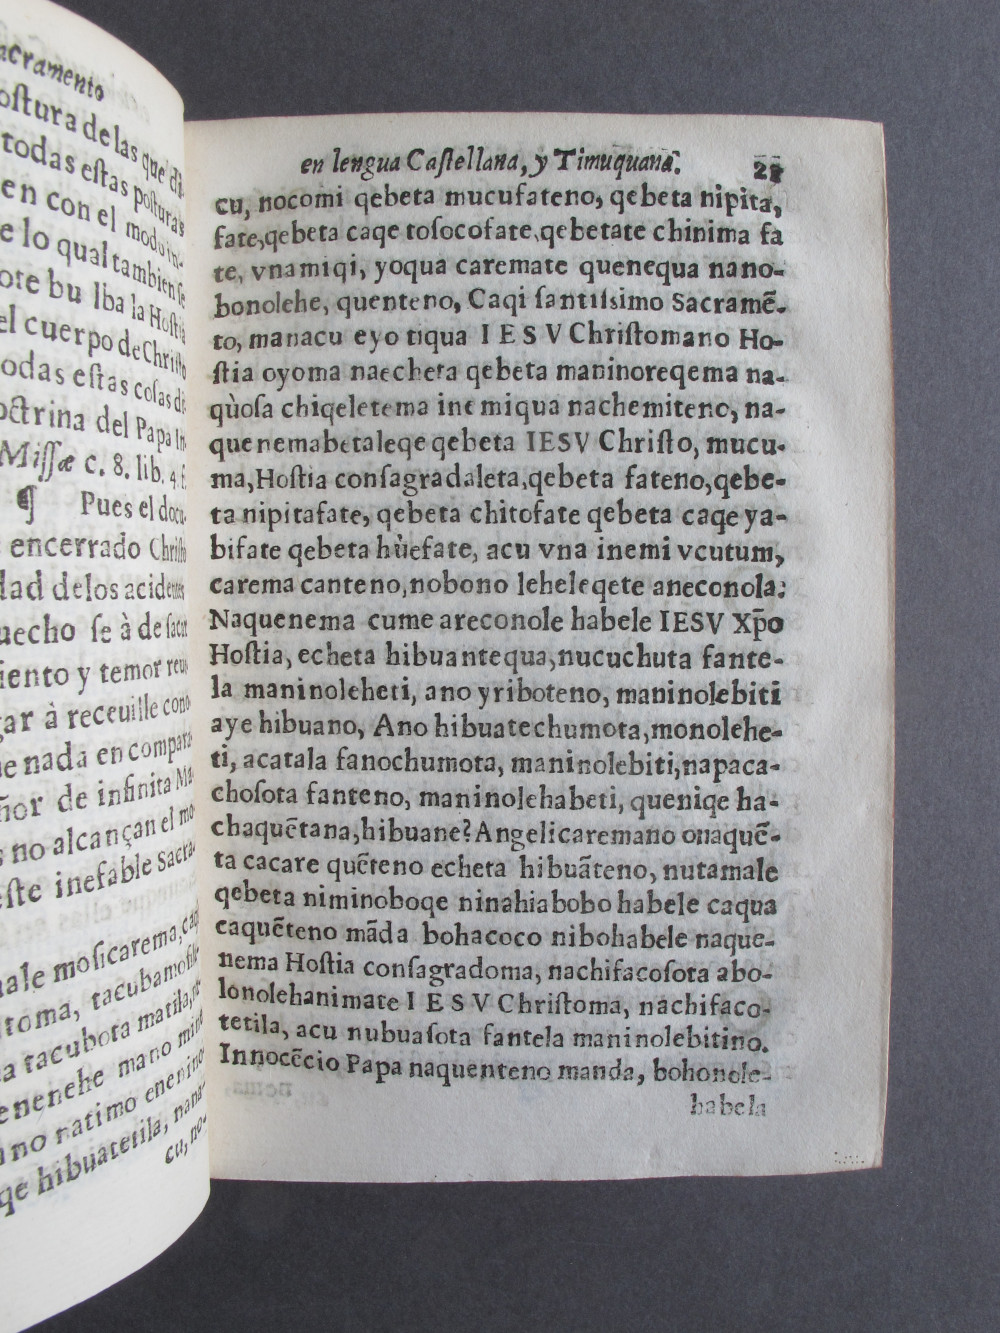 Folio C8 recto